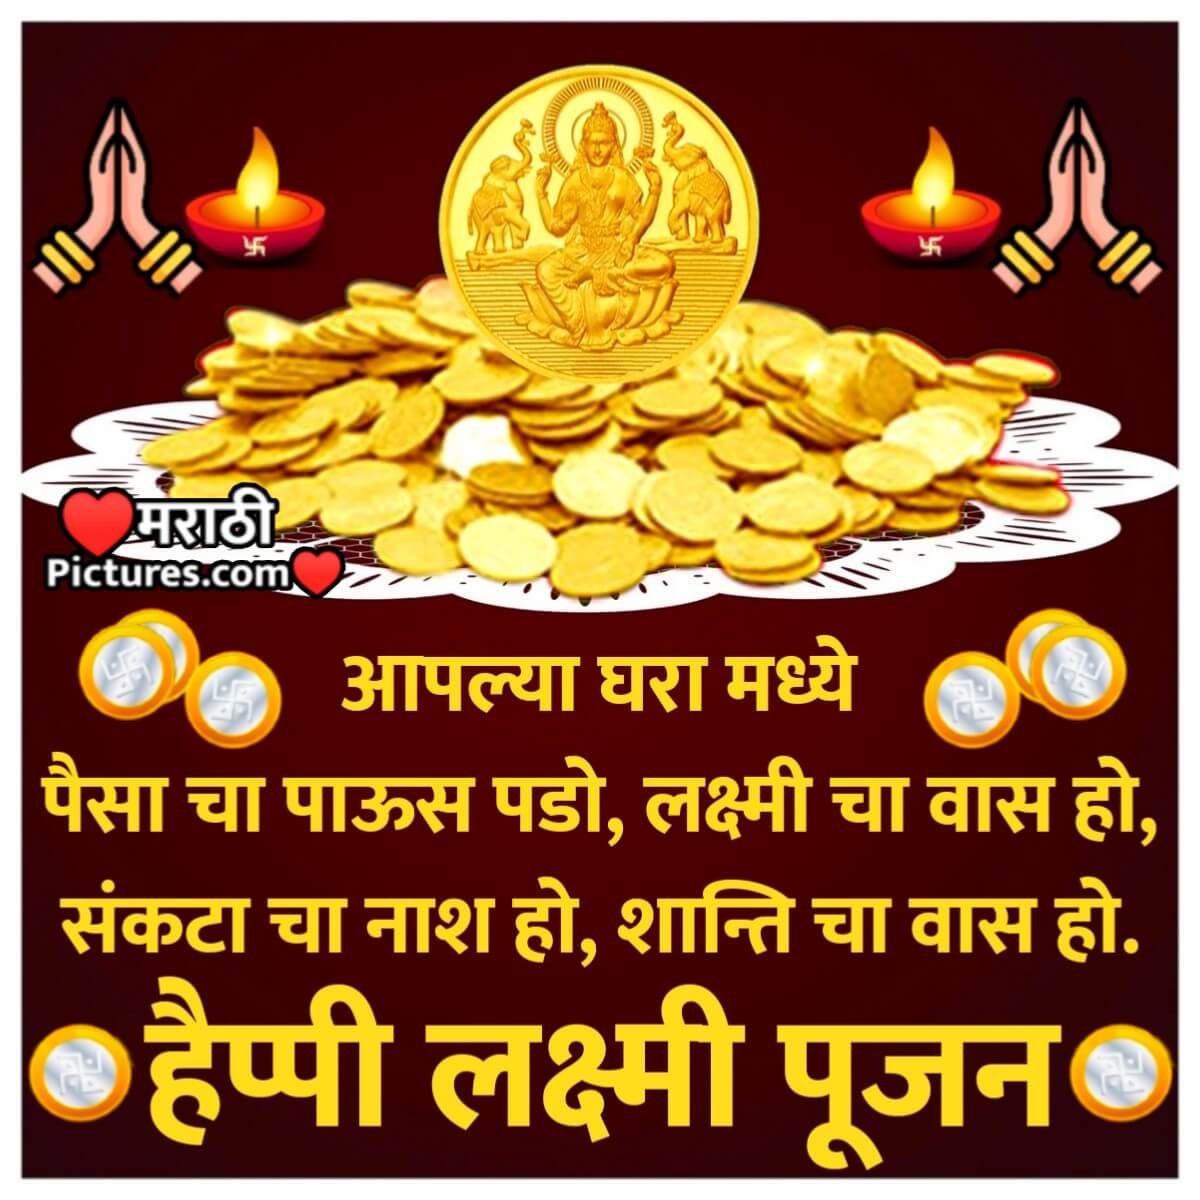 Happy Lakshmi Pujan Wishes In Marathi